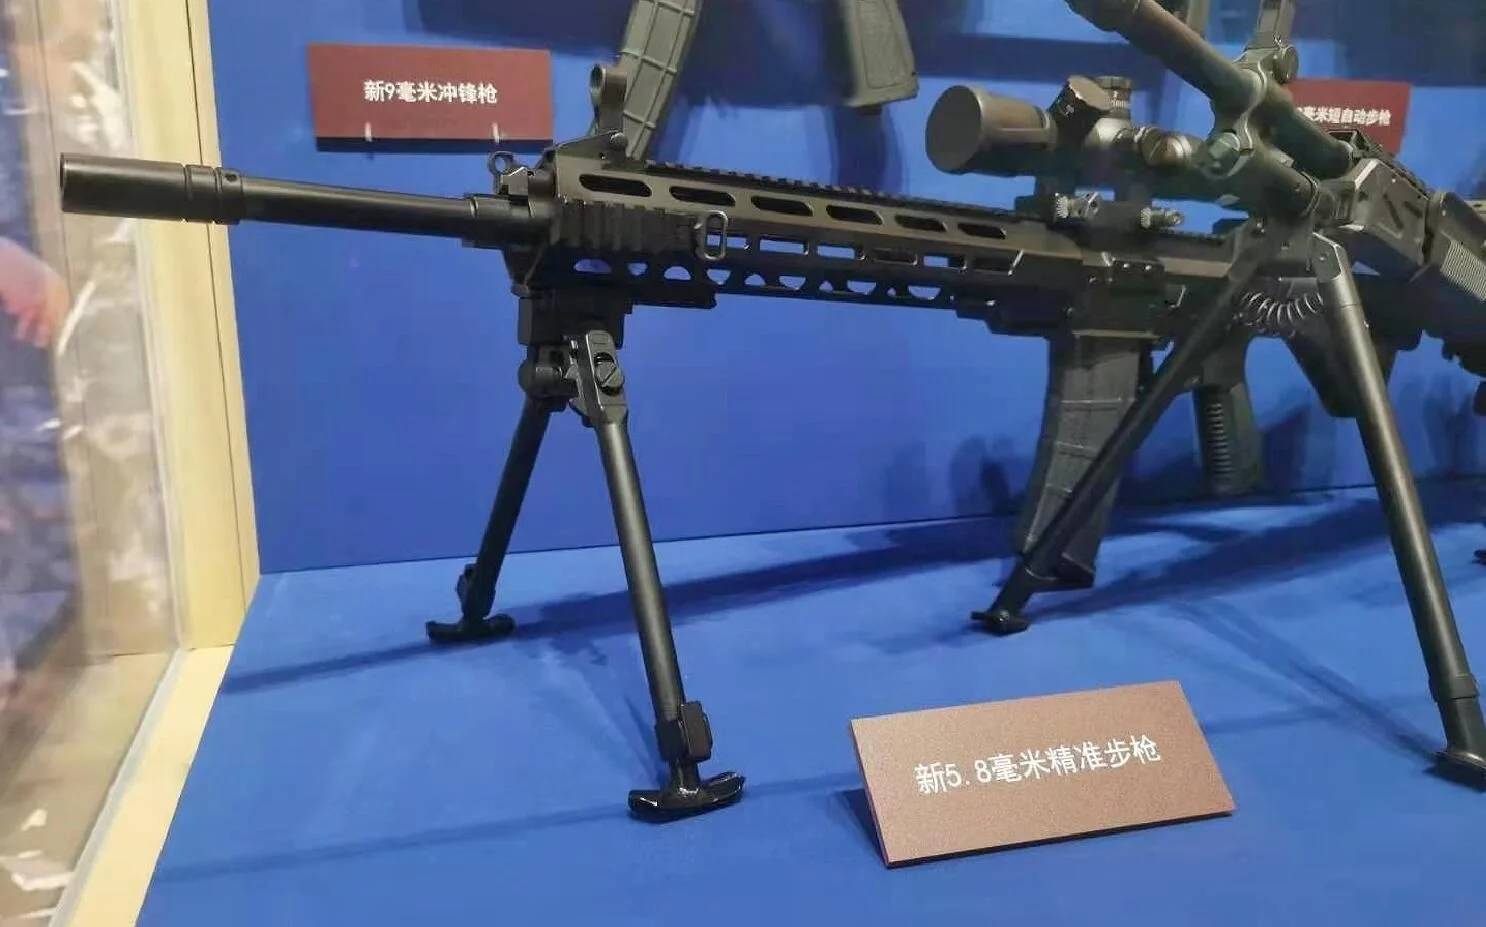 62中口径,国产hk417狙击步枪要跟进装备吗?_火力